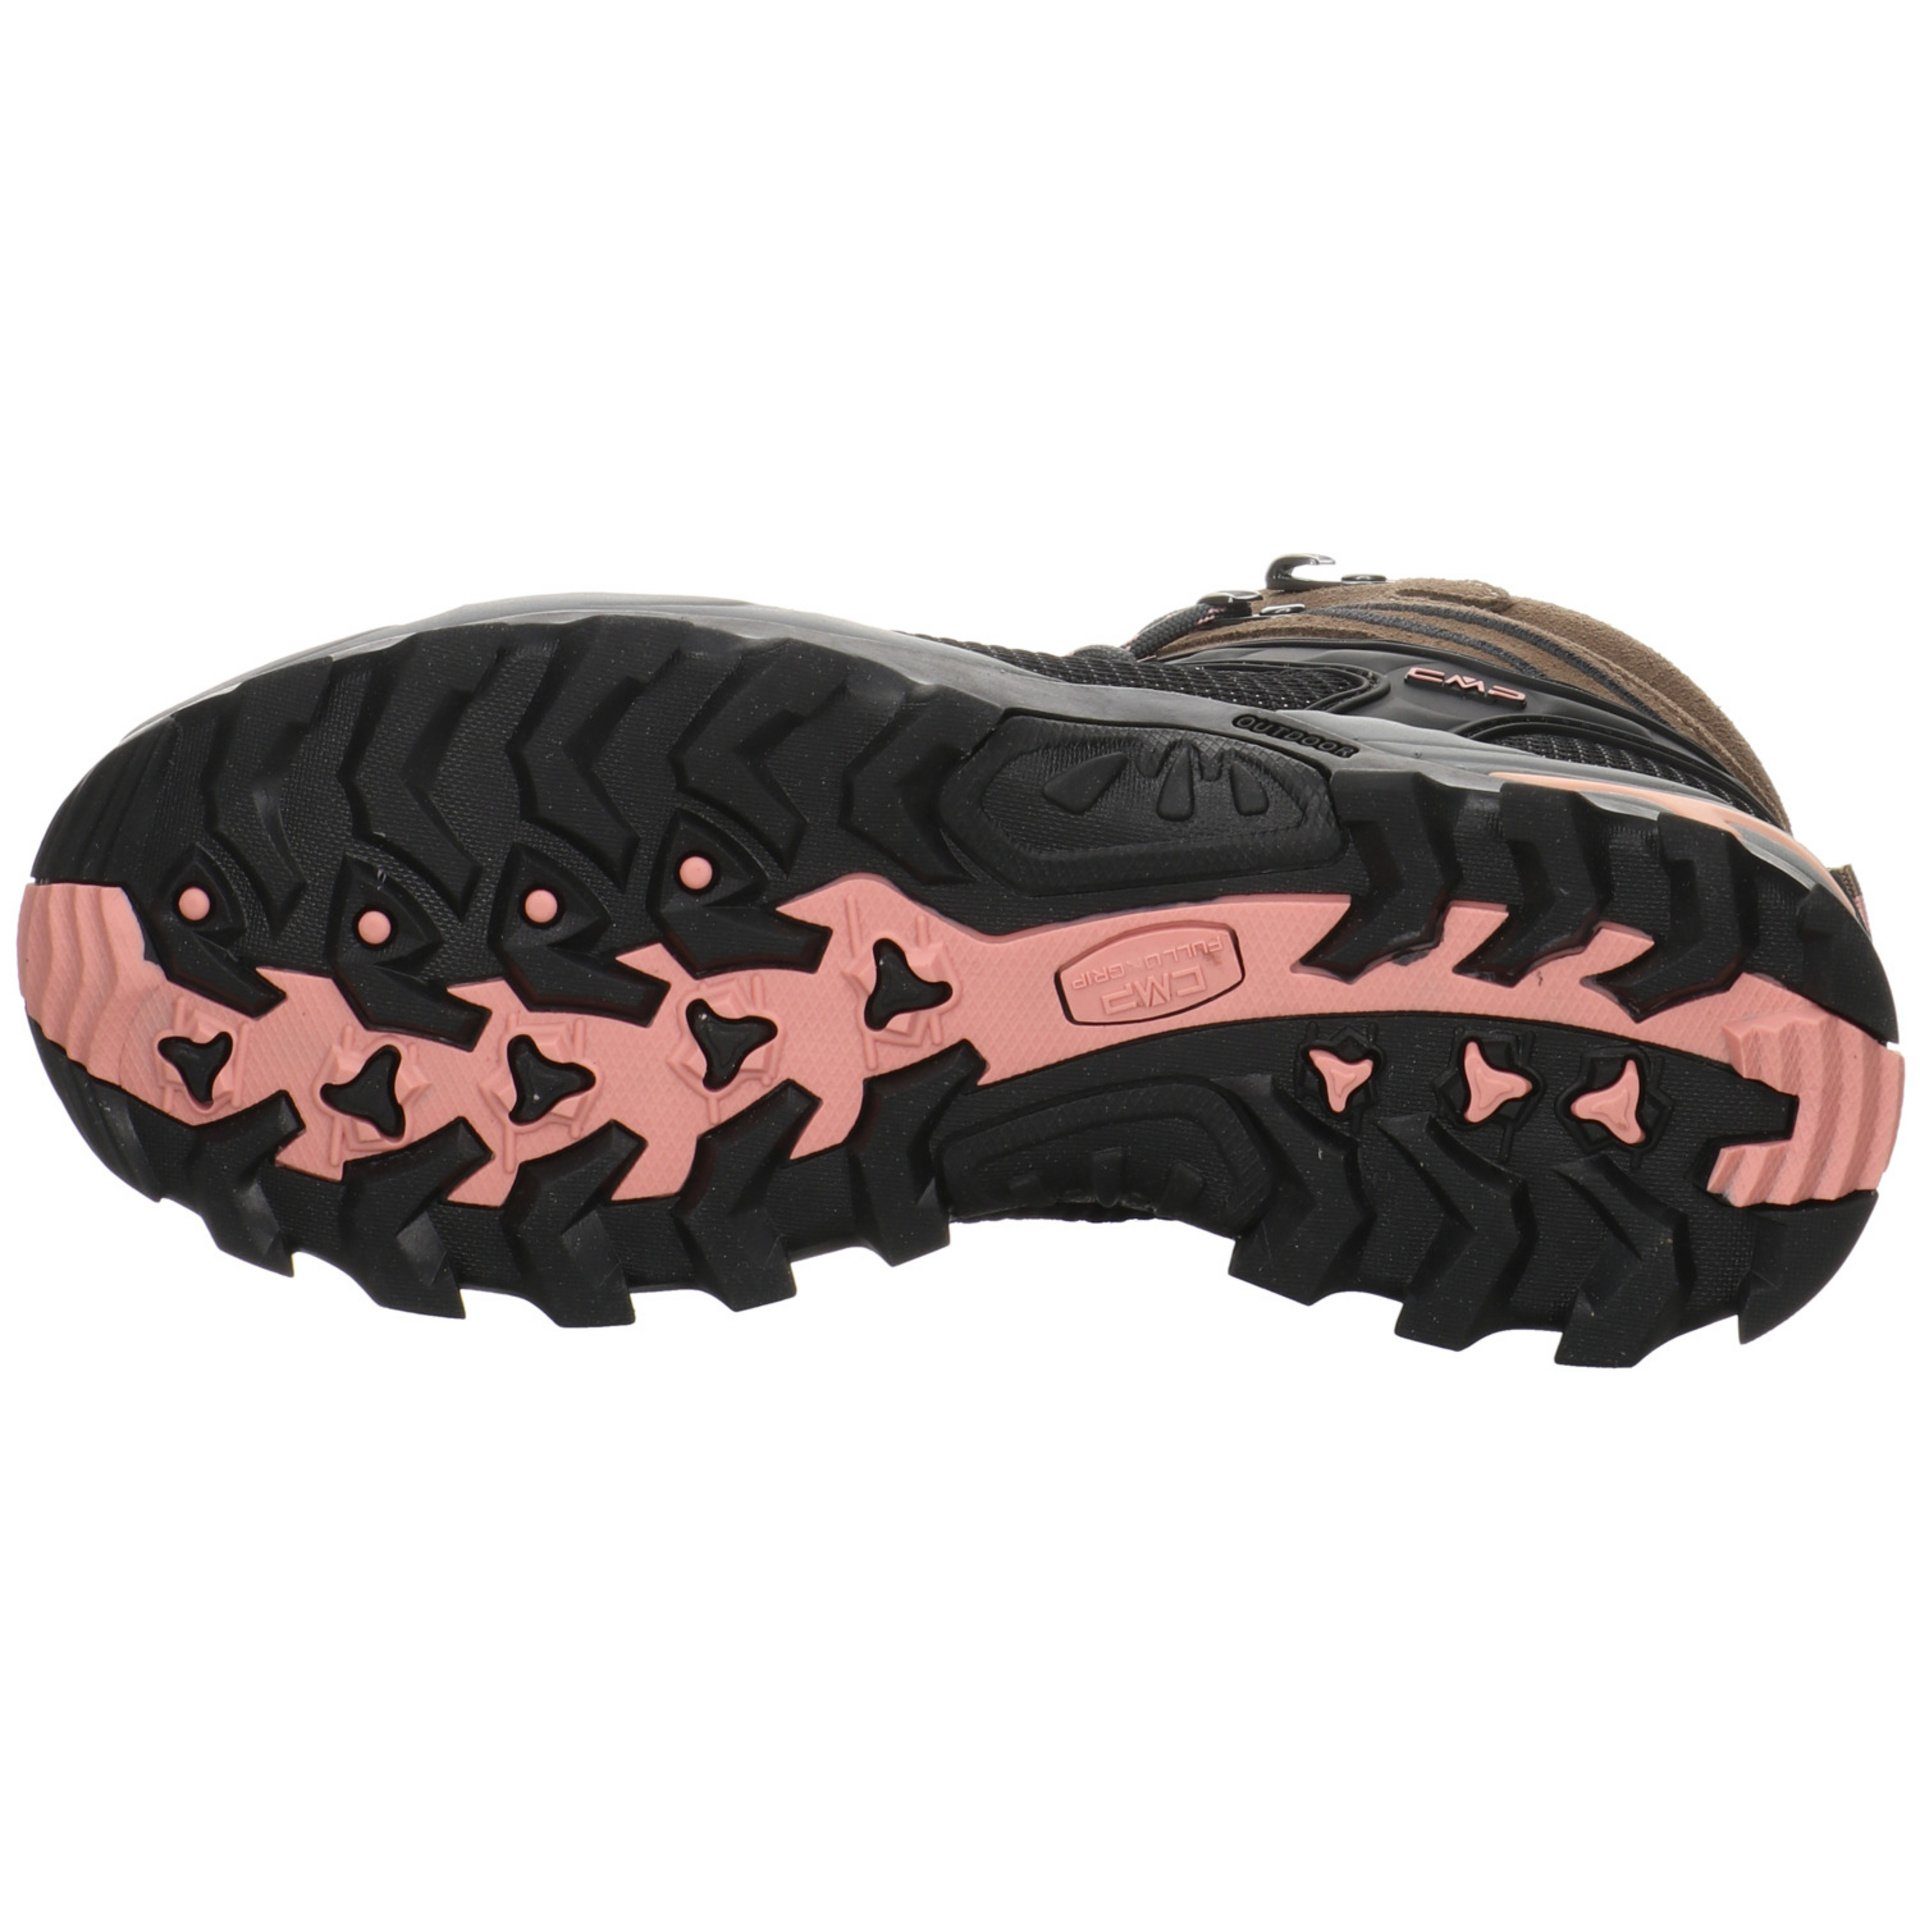 Damen Outdoorschuh Leder-/Textilkombination Rigel Schuhe Mid Outdoorschuh CENERE CMP Outdoor